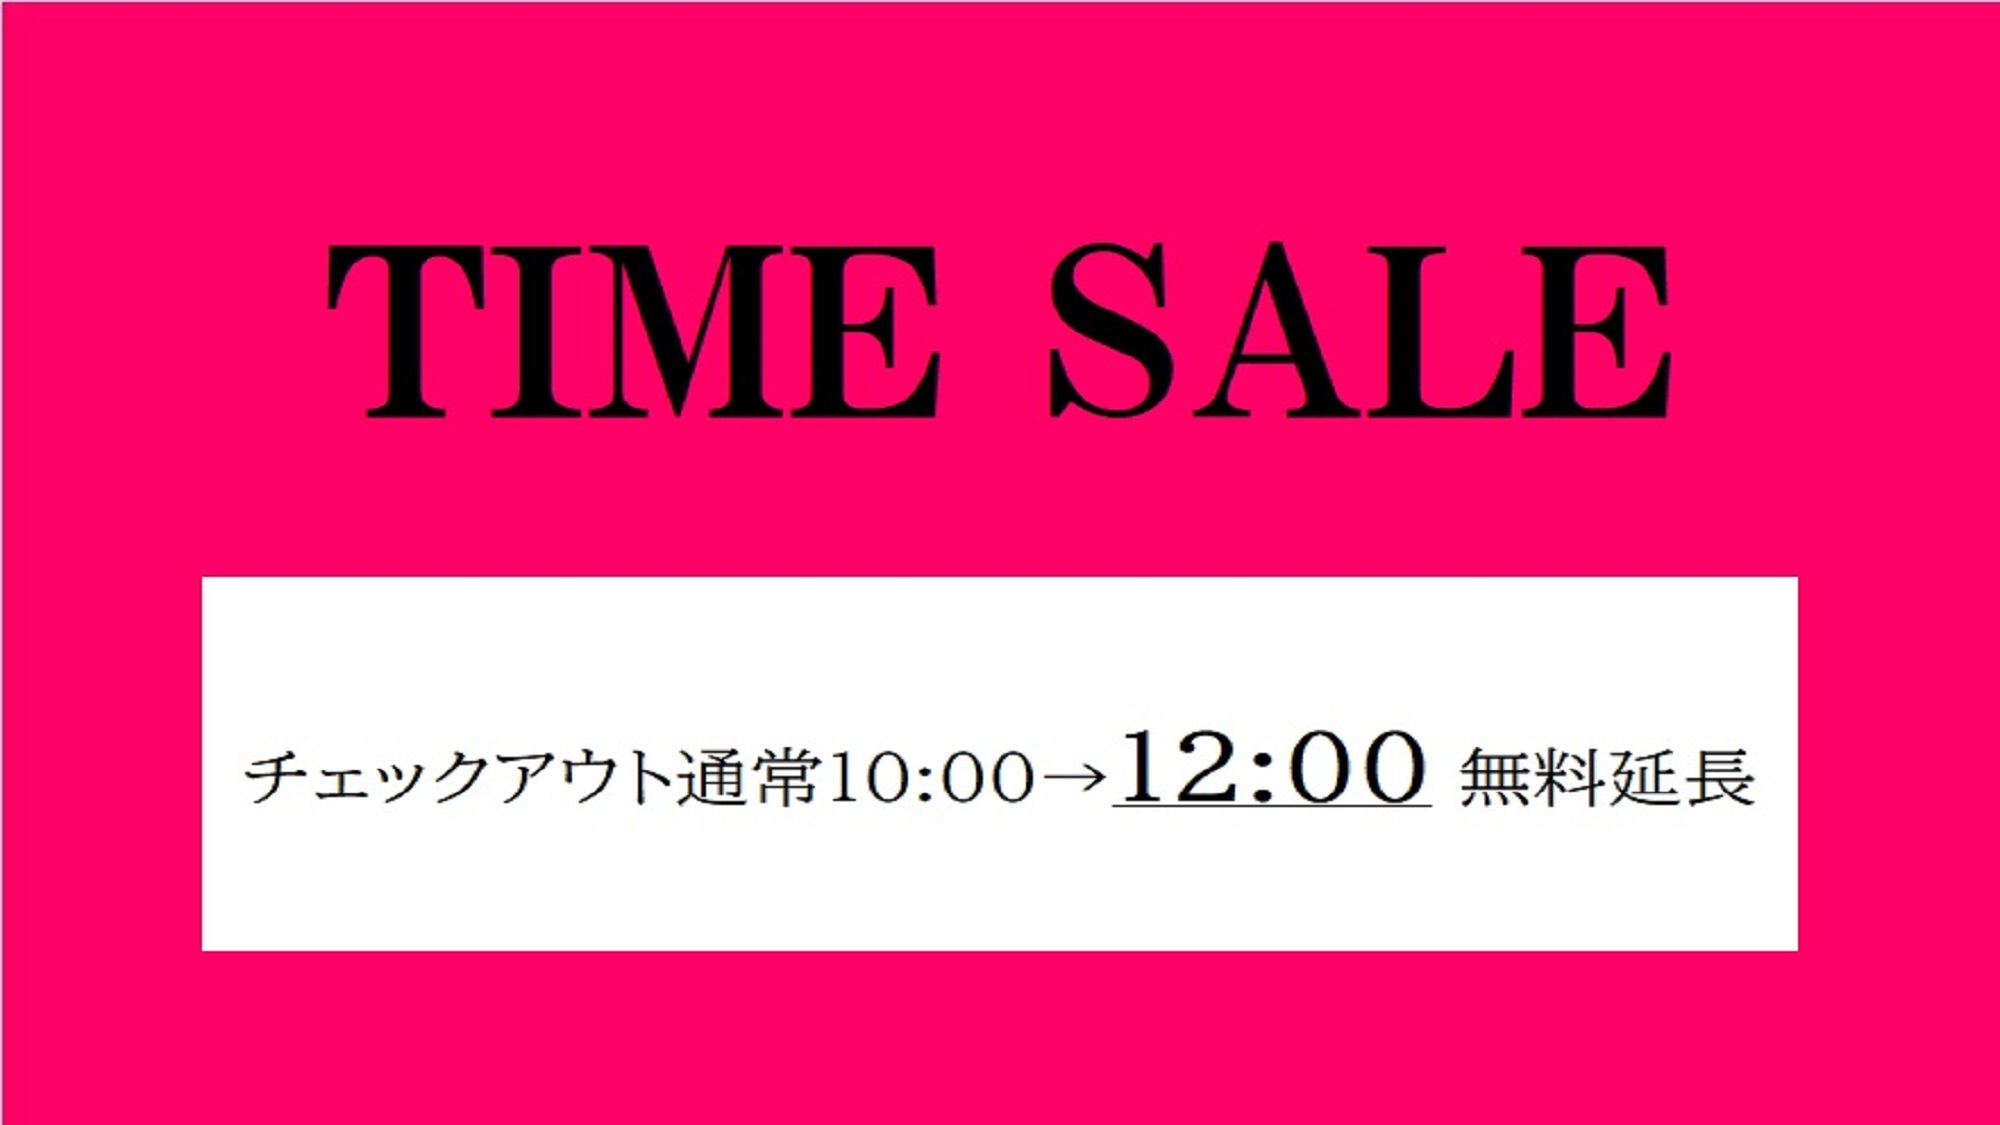 【期間限定】TIME SALE　レイトチェックアウト12:00≪朝食付き≫